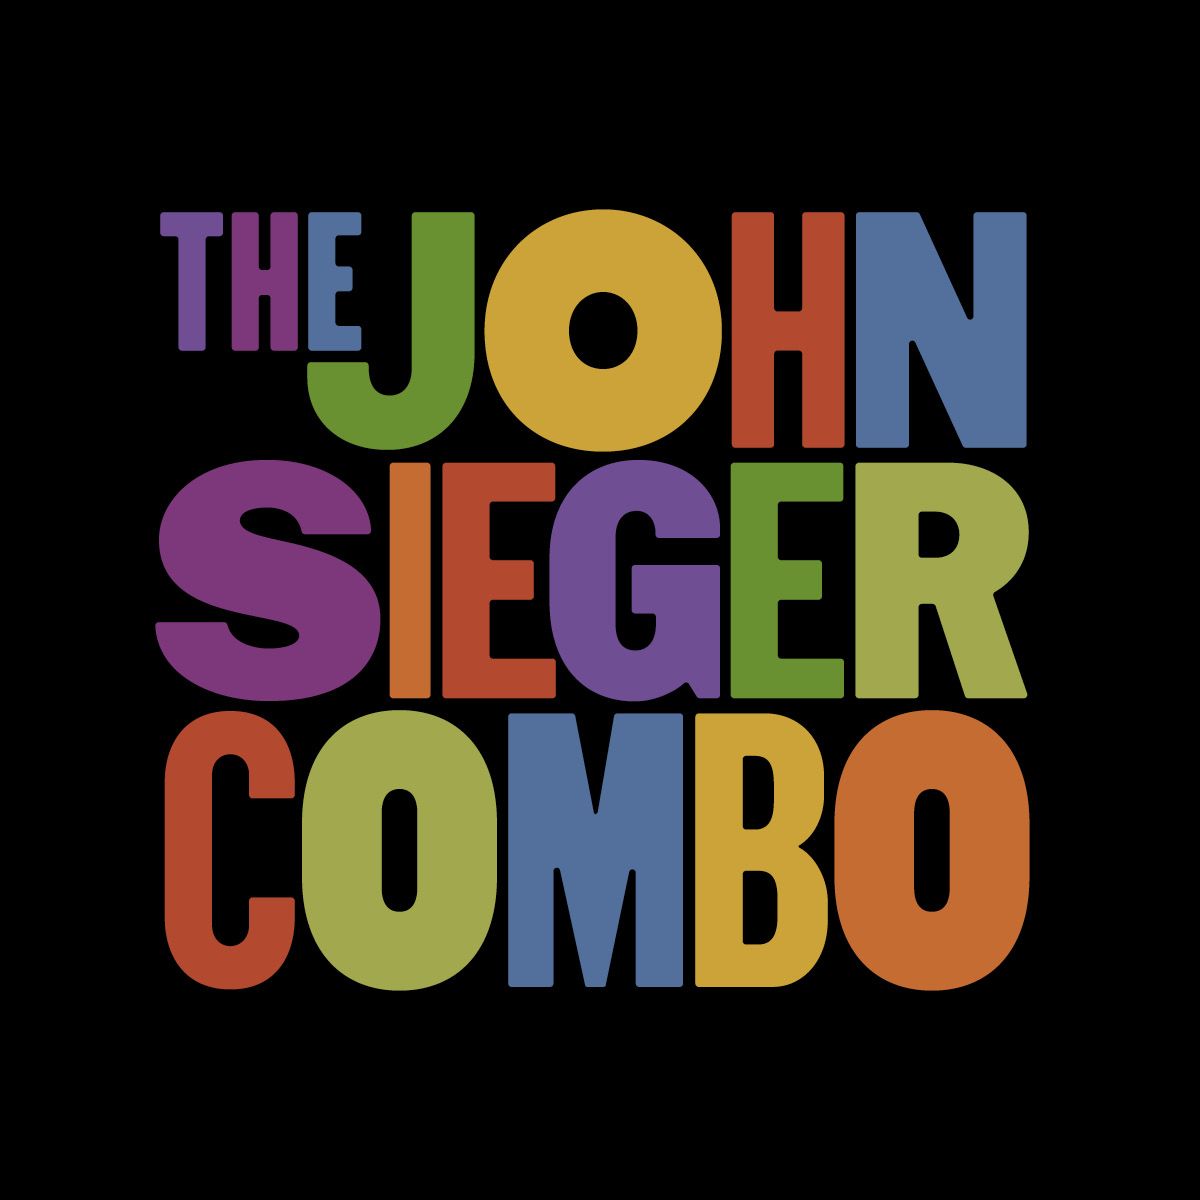 The John Sieger Combo!